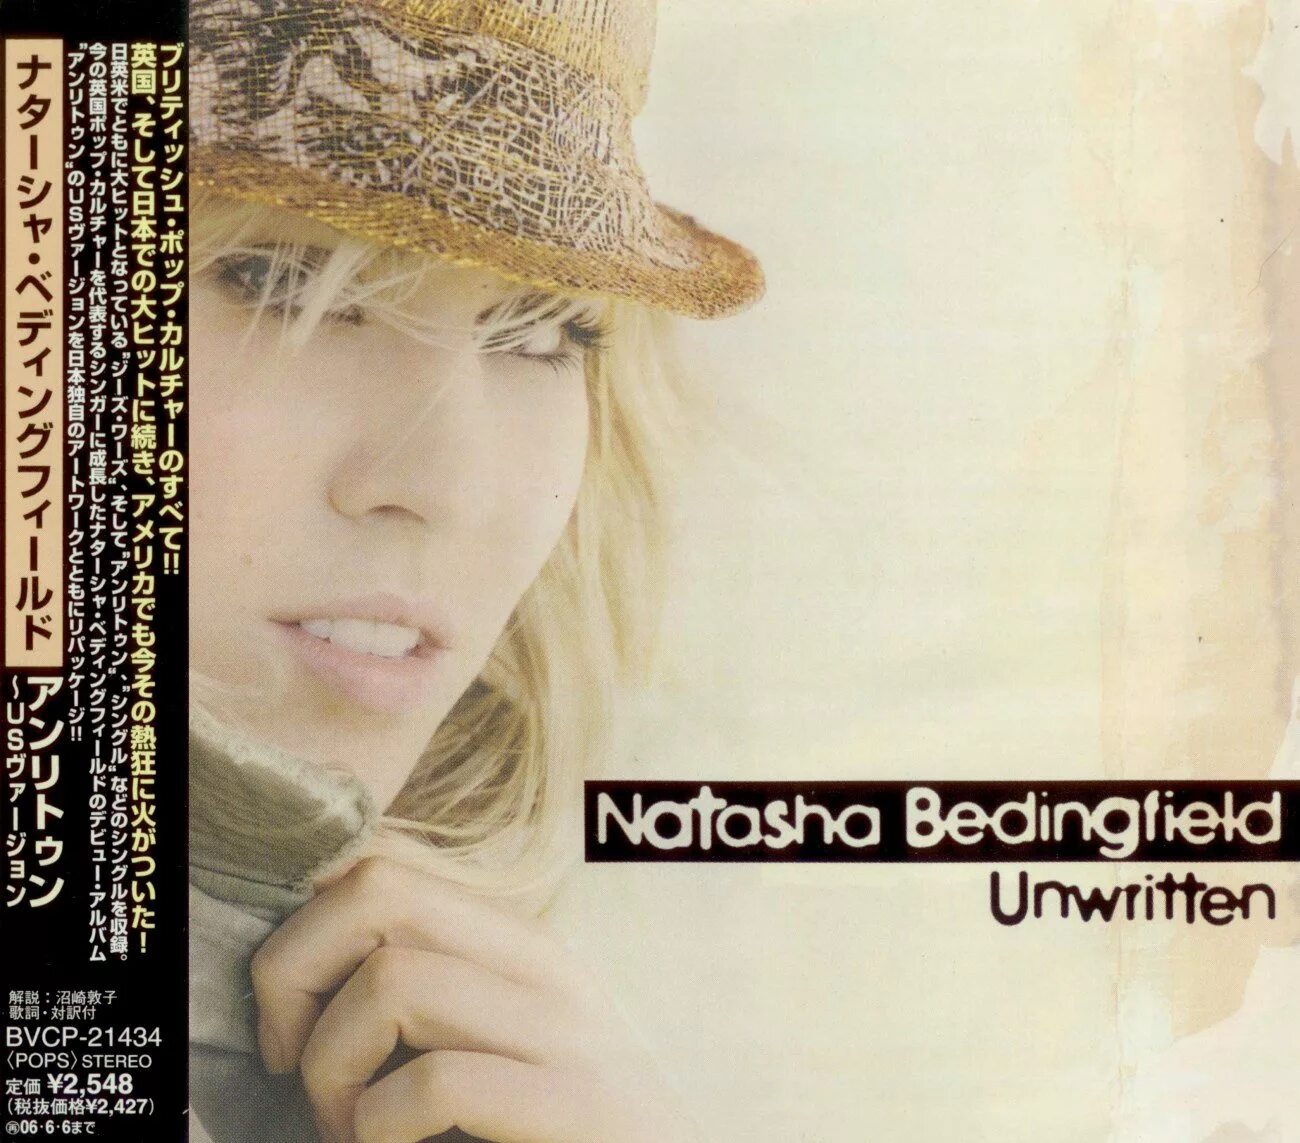 Bedingfield, Natasha__Unwritten [2004]==. Unwritten Наташа Бедингфилд. Natasha Bedingfield 2023. Natasha bedingfield unwritten